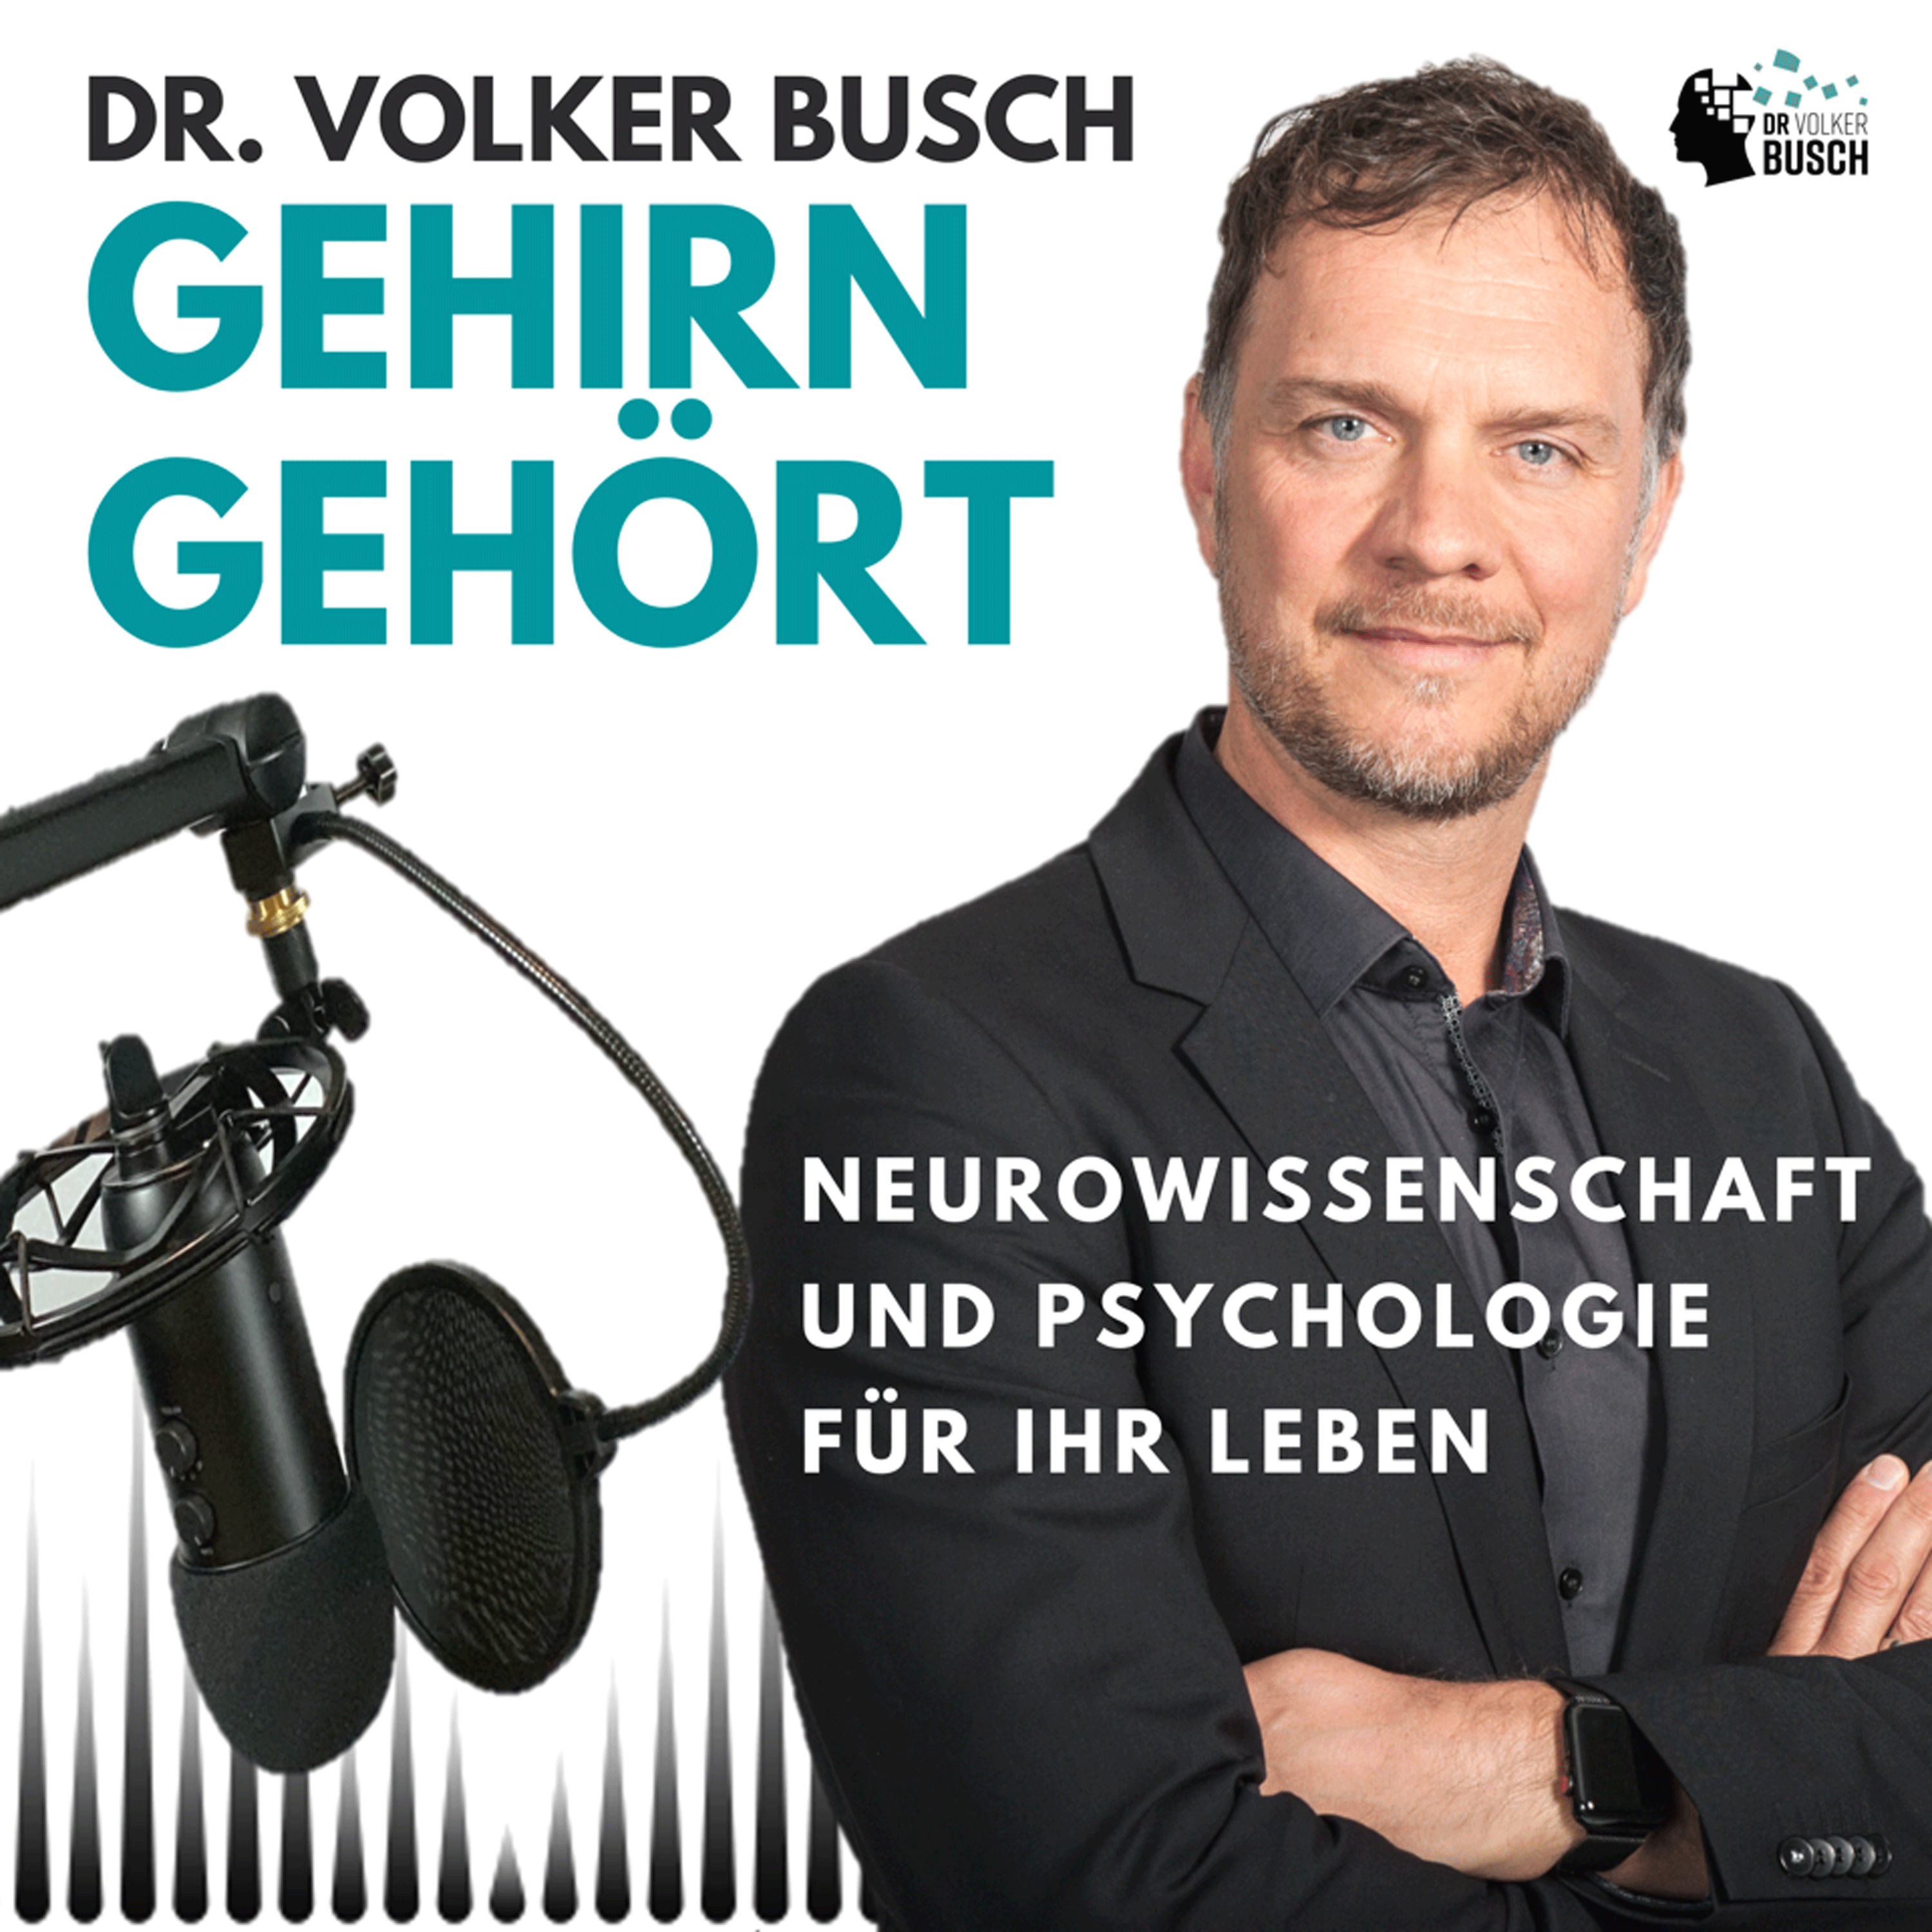 Gehirn gehört - Dr. Volker Busch:Dr. Volker Busch